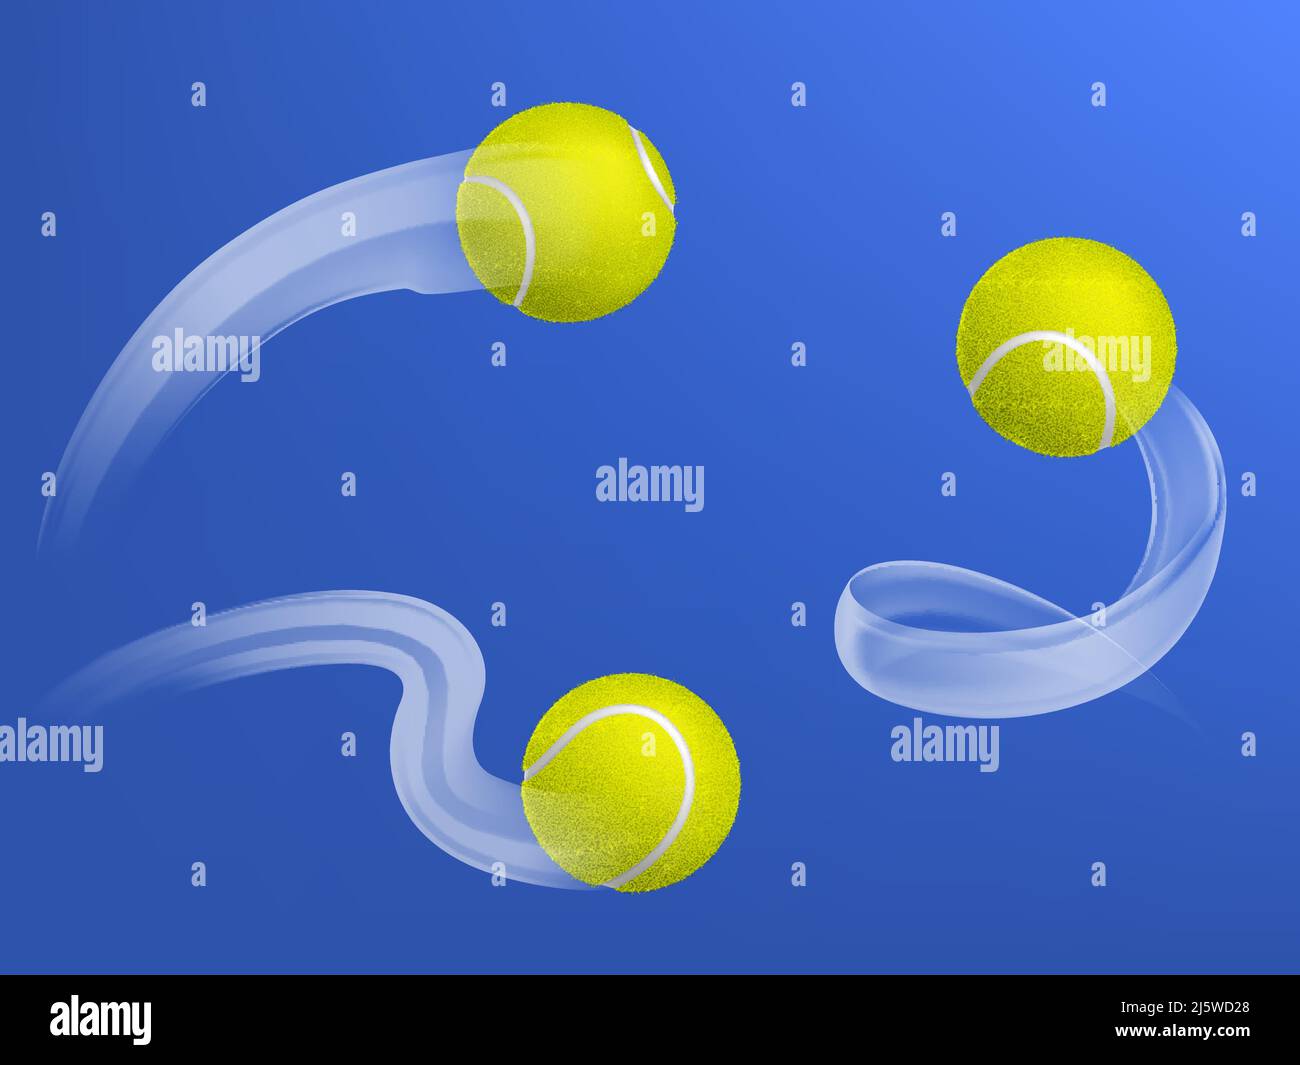 Palle da tennis che volano traiettorie diverse dopo racket ha colpito 3D illustrazioni vettoriali realistiche set isolato su sfondo blu. Concorso di tennis o t Illustrazione Vettoriale